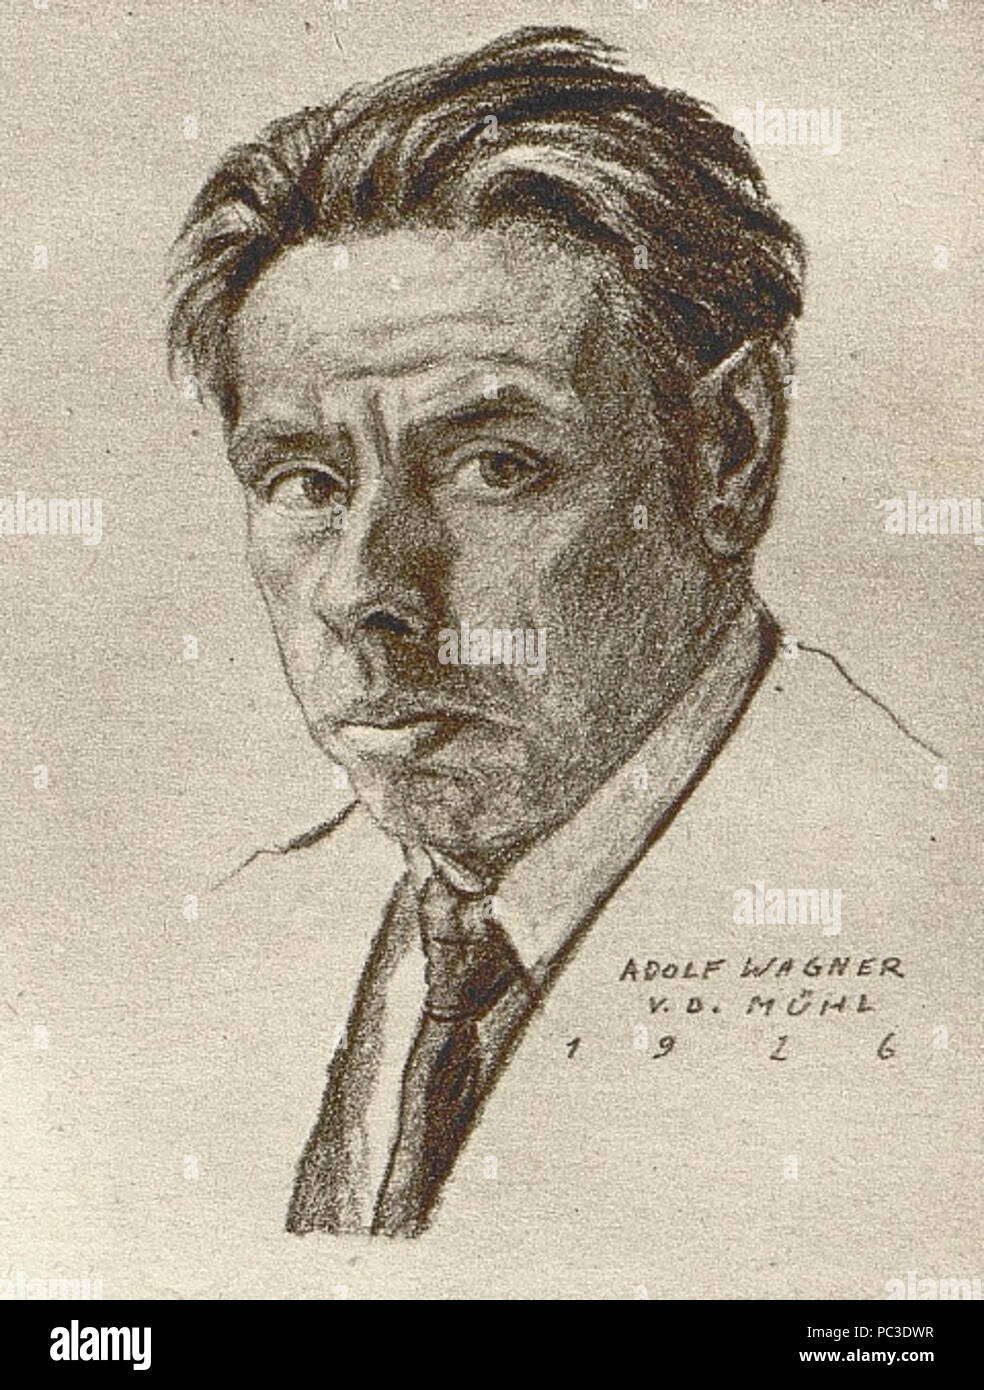 Adolf Wagner von der Mühl - Selbstporträt. Stockfoto